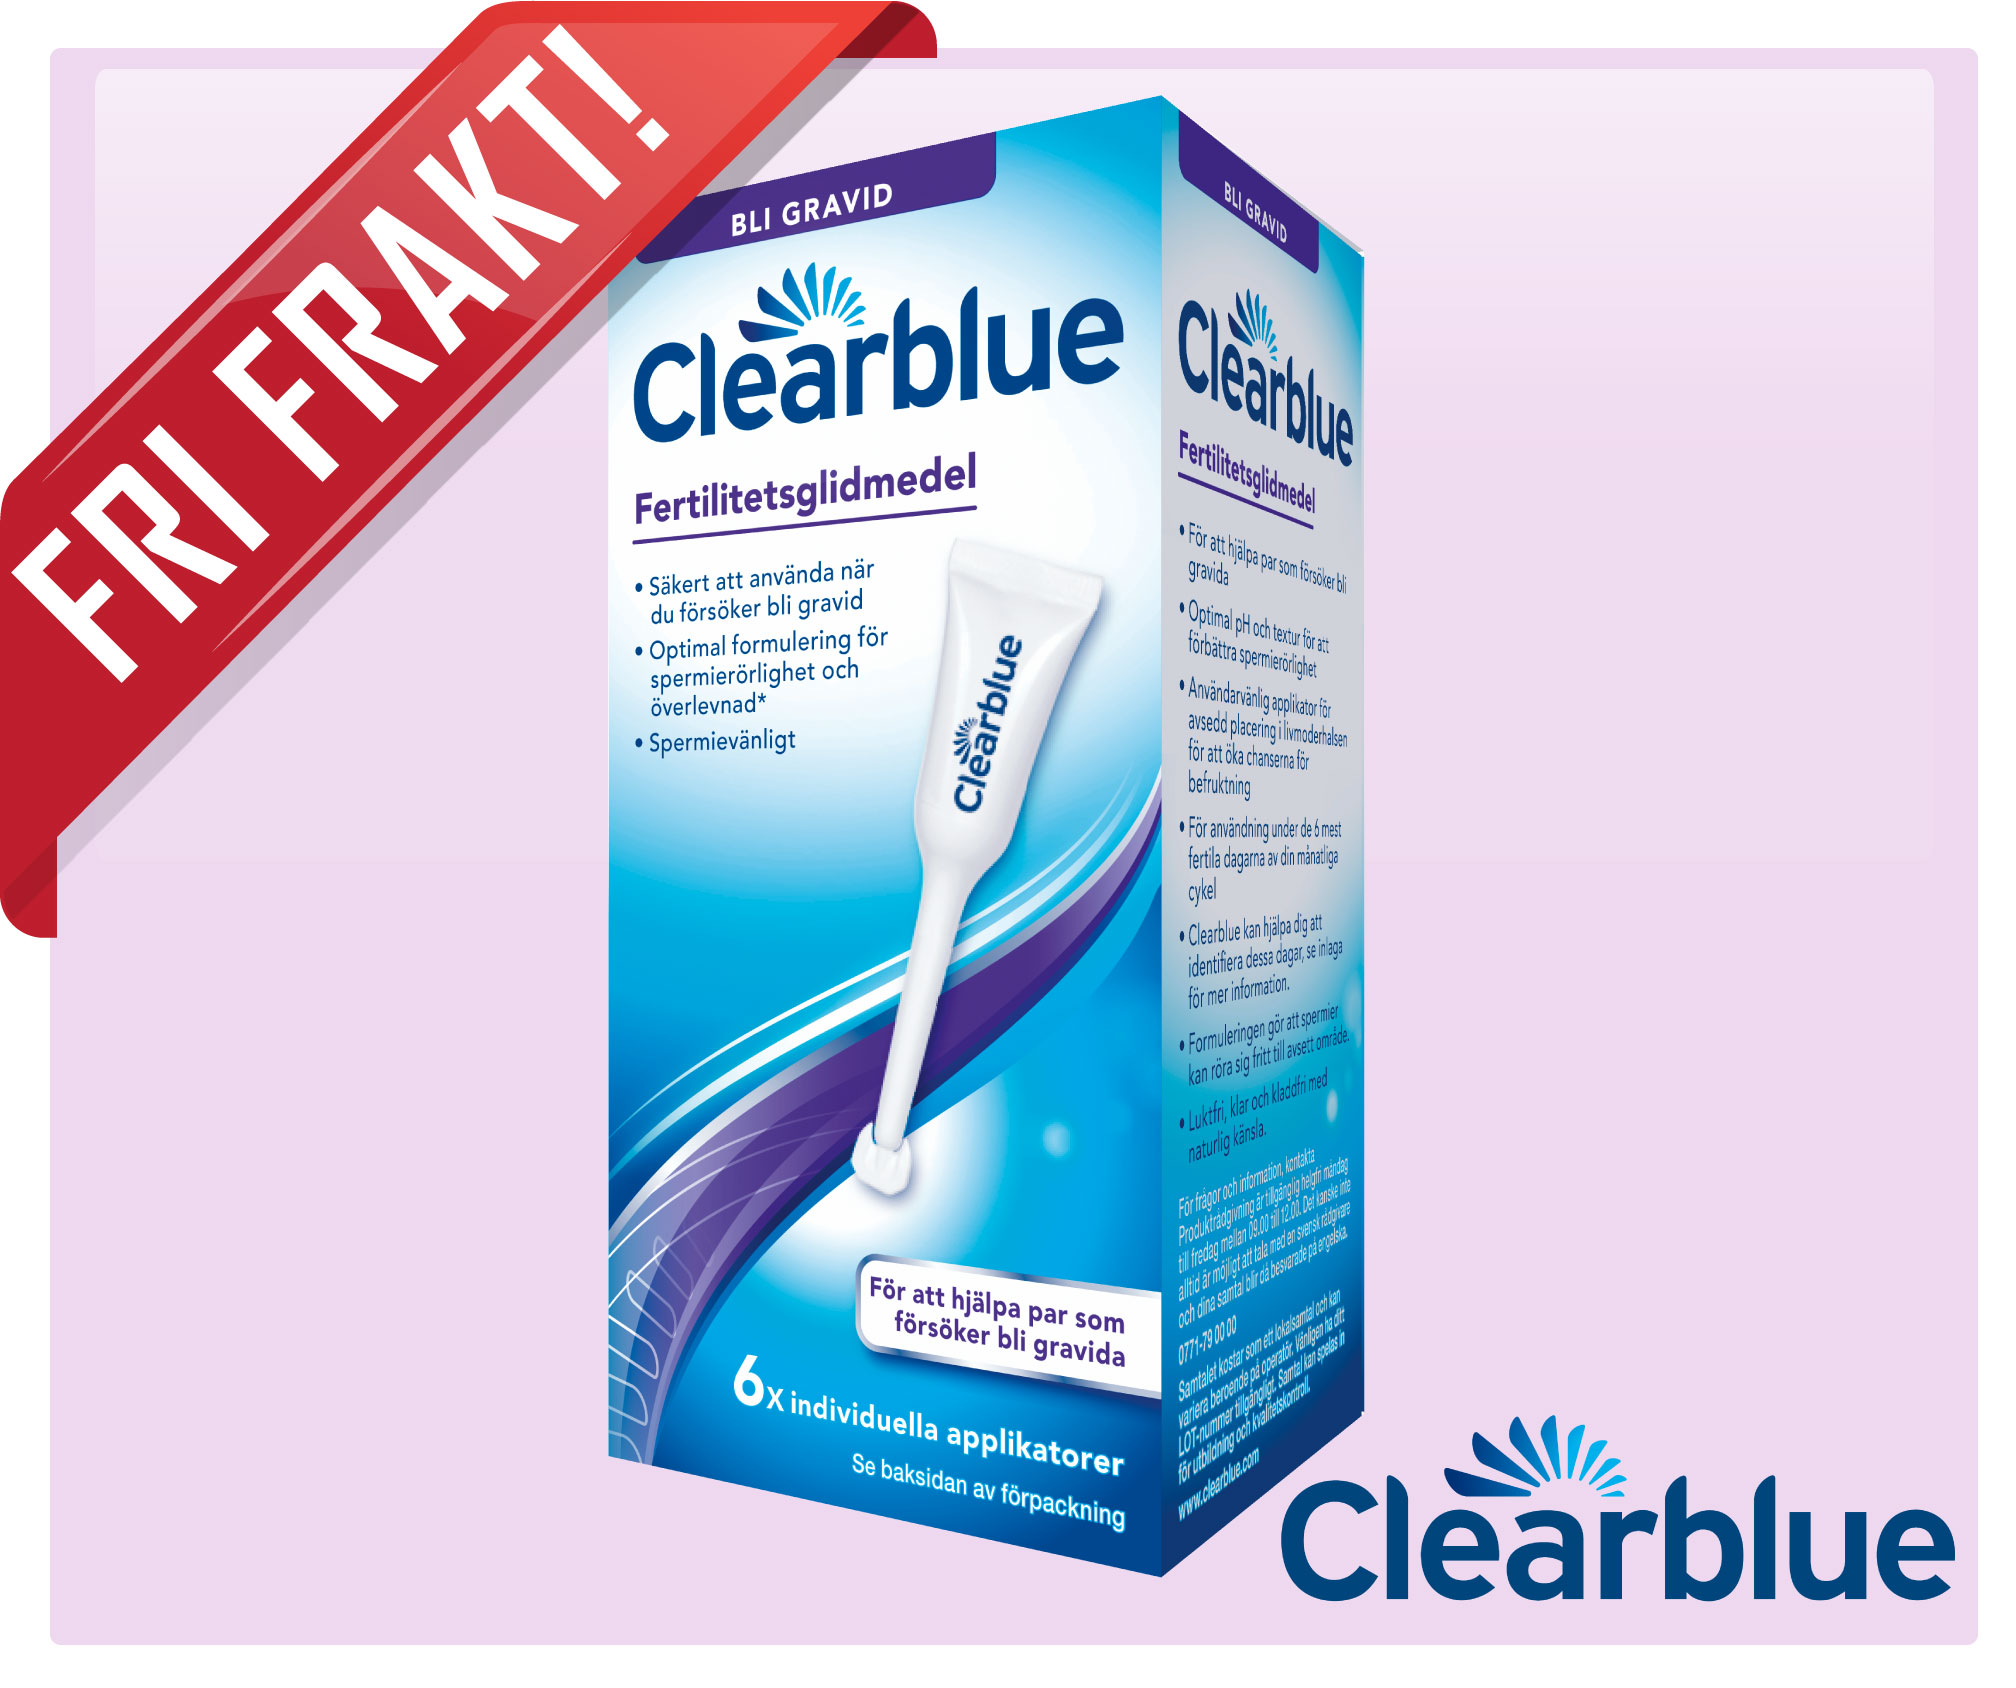 Clearblue fertilitetsglidmedel